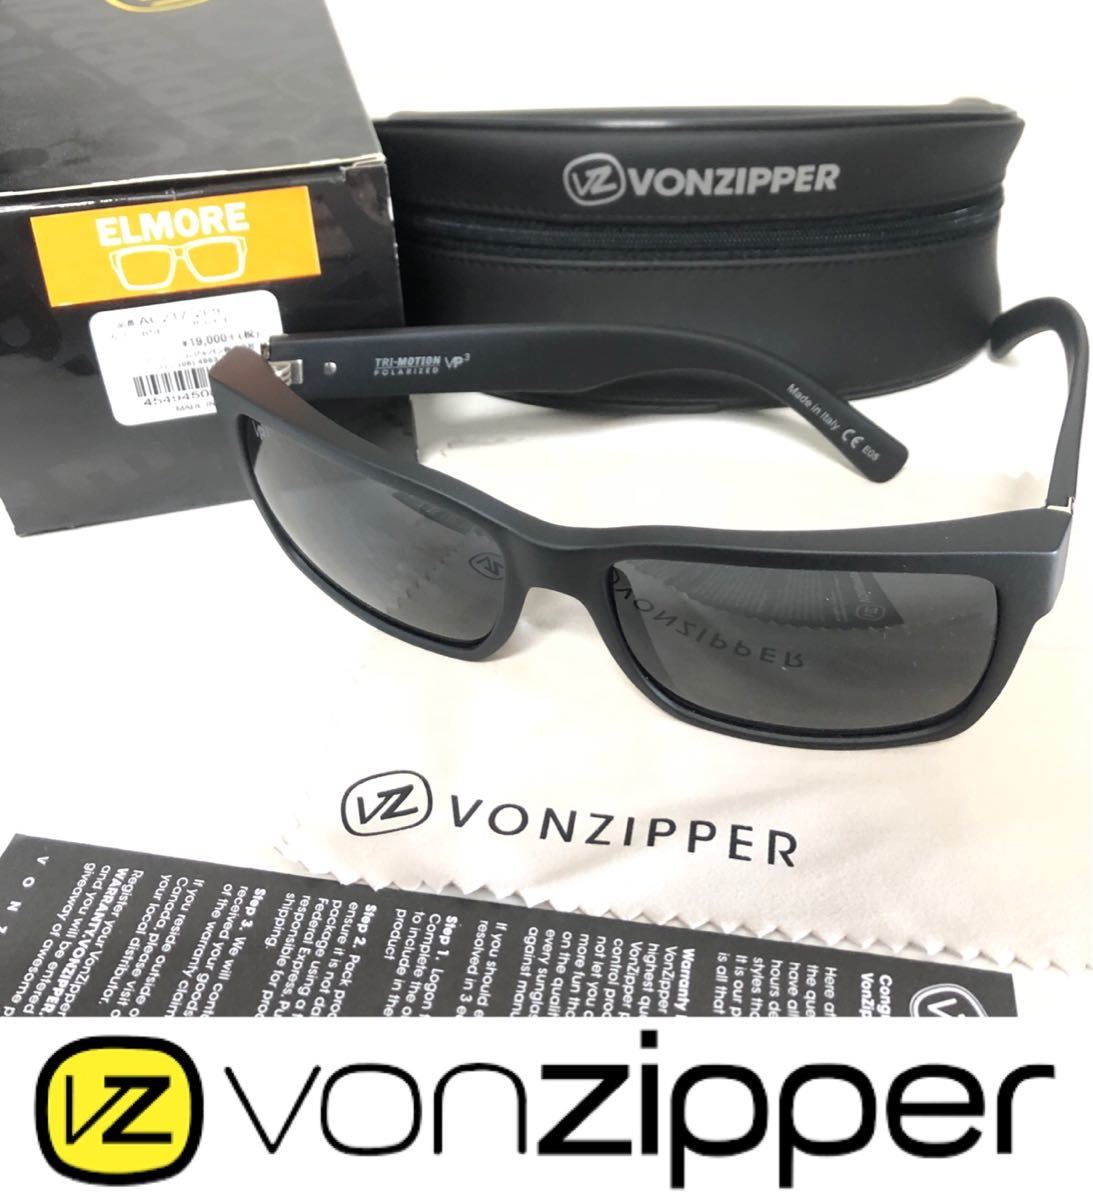 【在庫有】 VONZIPPER オークリー レイバン 偏光レンズ サングラス 偏光 エルモア ボンジッパー セル、プラスチックフレーム